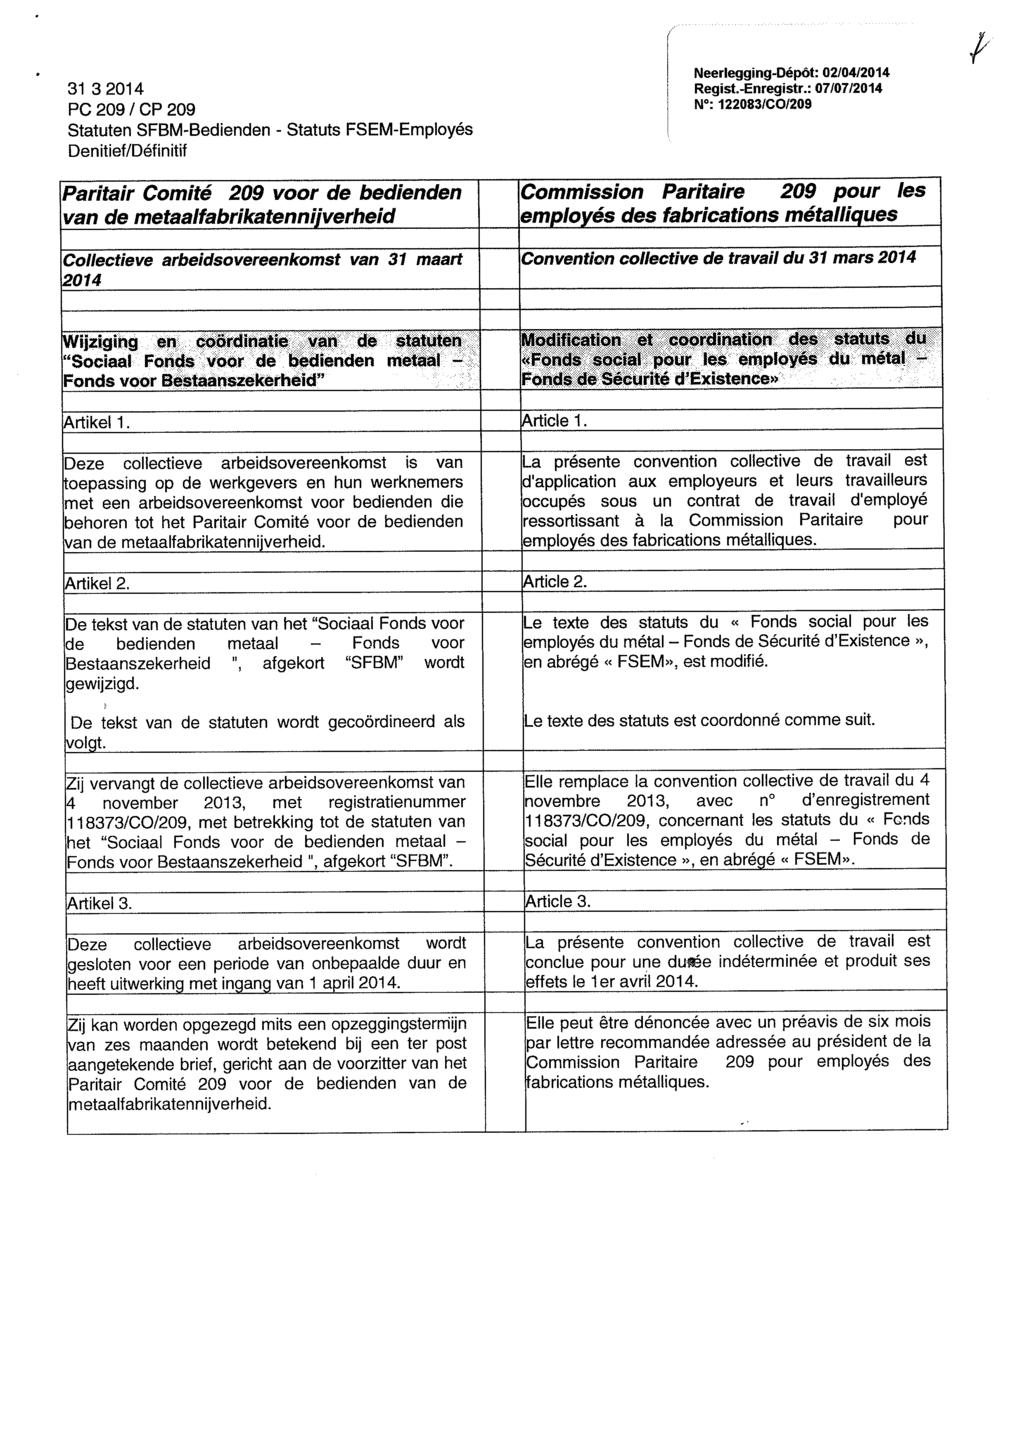 Paritair Comité 209 voor de bedienden van de metaalfabrikatennijverheid Collectieve arbeidsovereenkomst van 31 maart 2014 Neerlegging-Dépôt: 02/04/2014 Regist.-Enregistr.